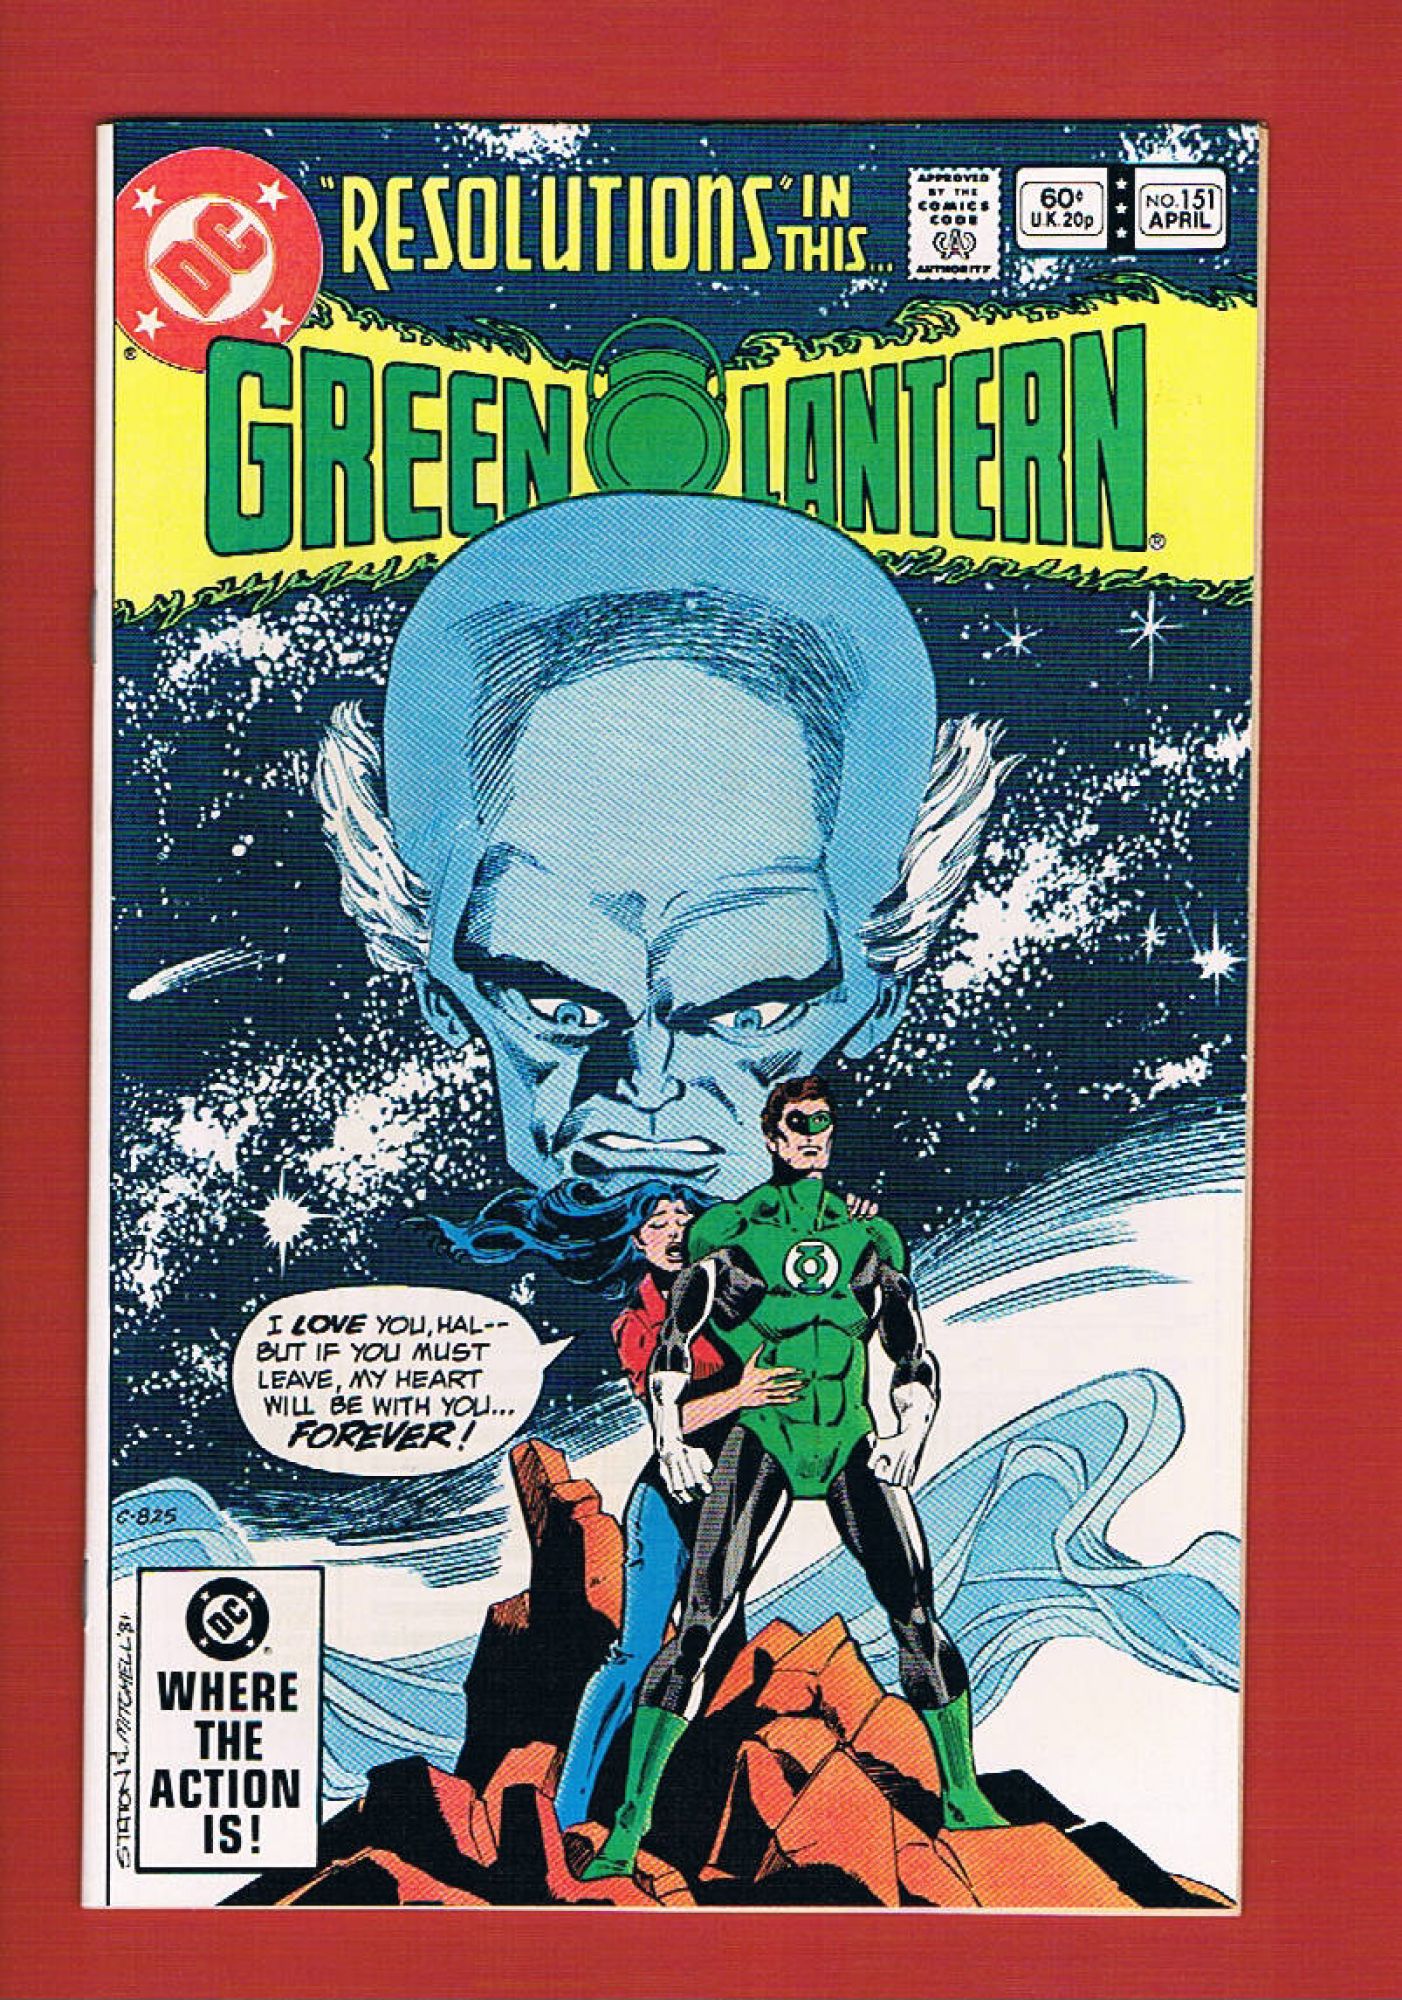 Green Lantern #151, Apr 1982, 9.2 NM-